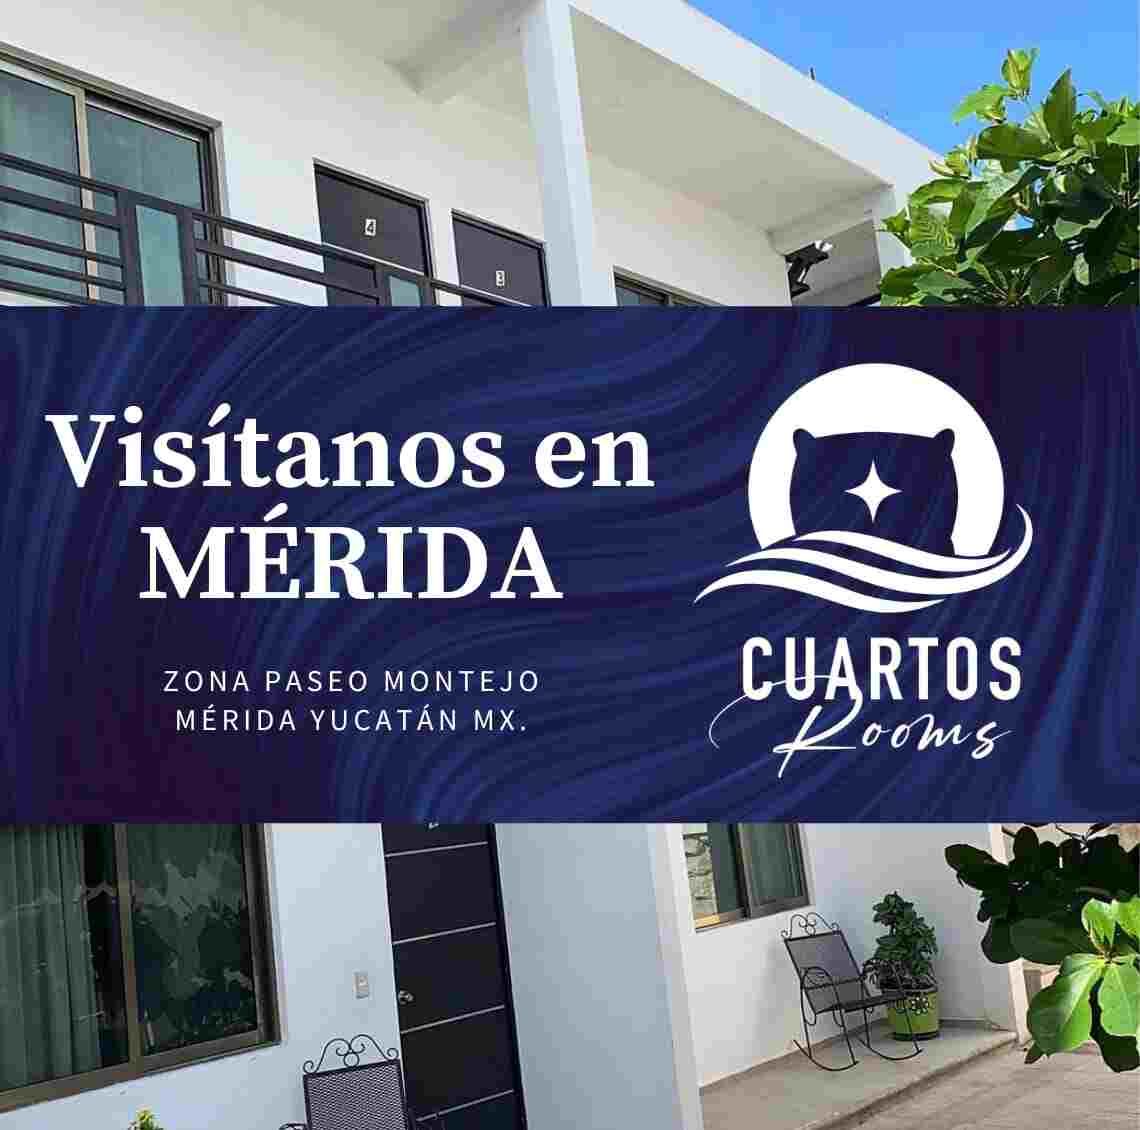 Logotipo del hotel Cuartos Rooms de Mérida, Yucatán.